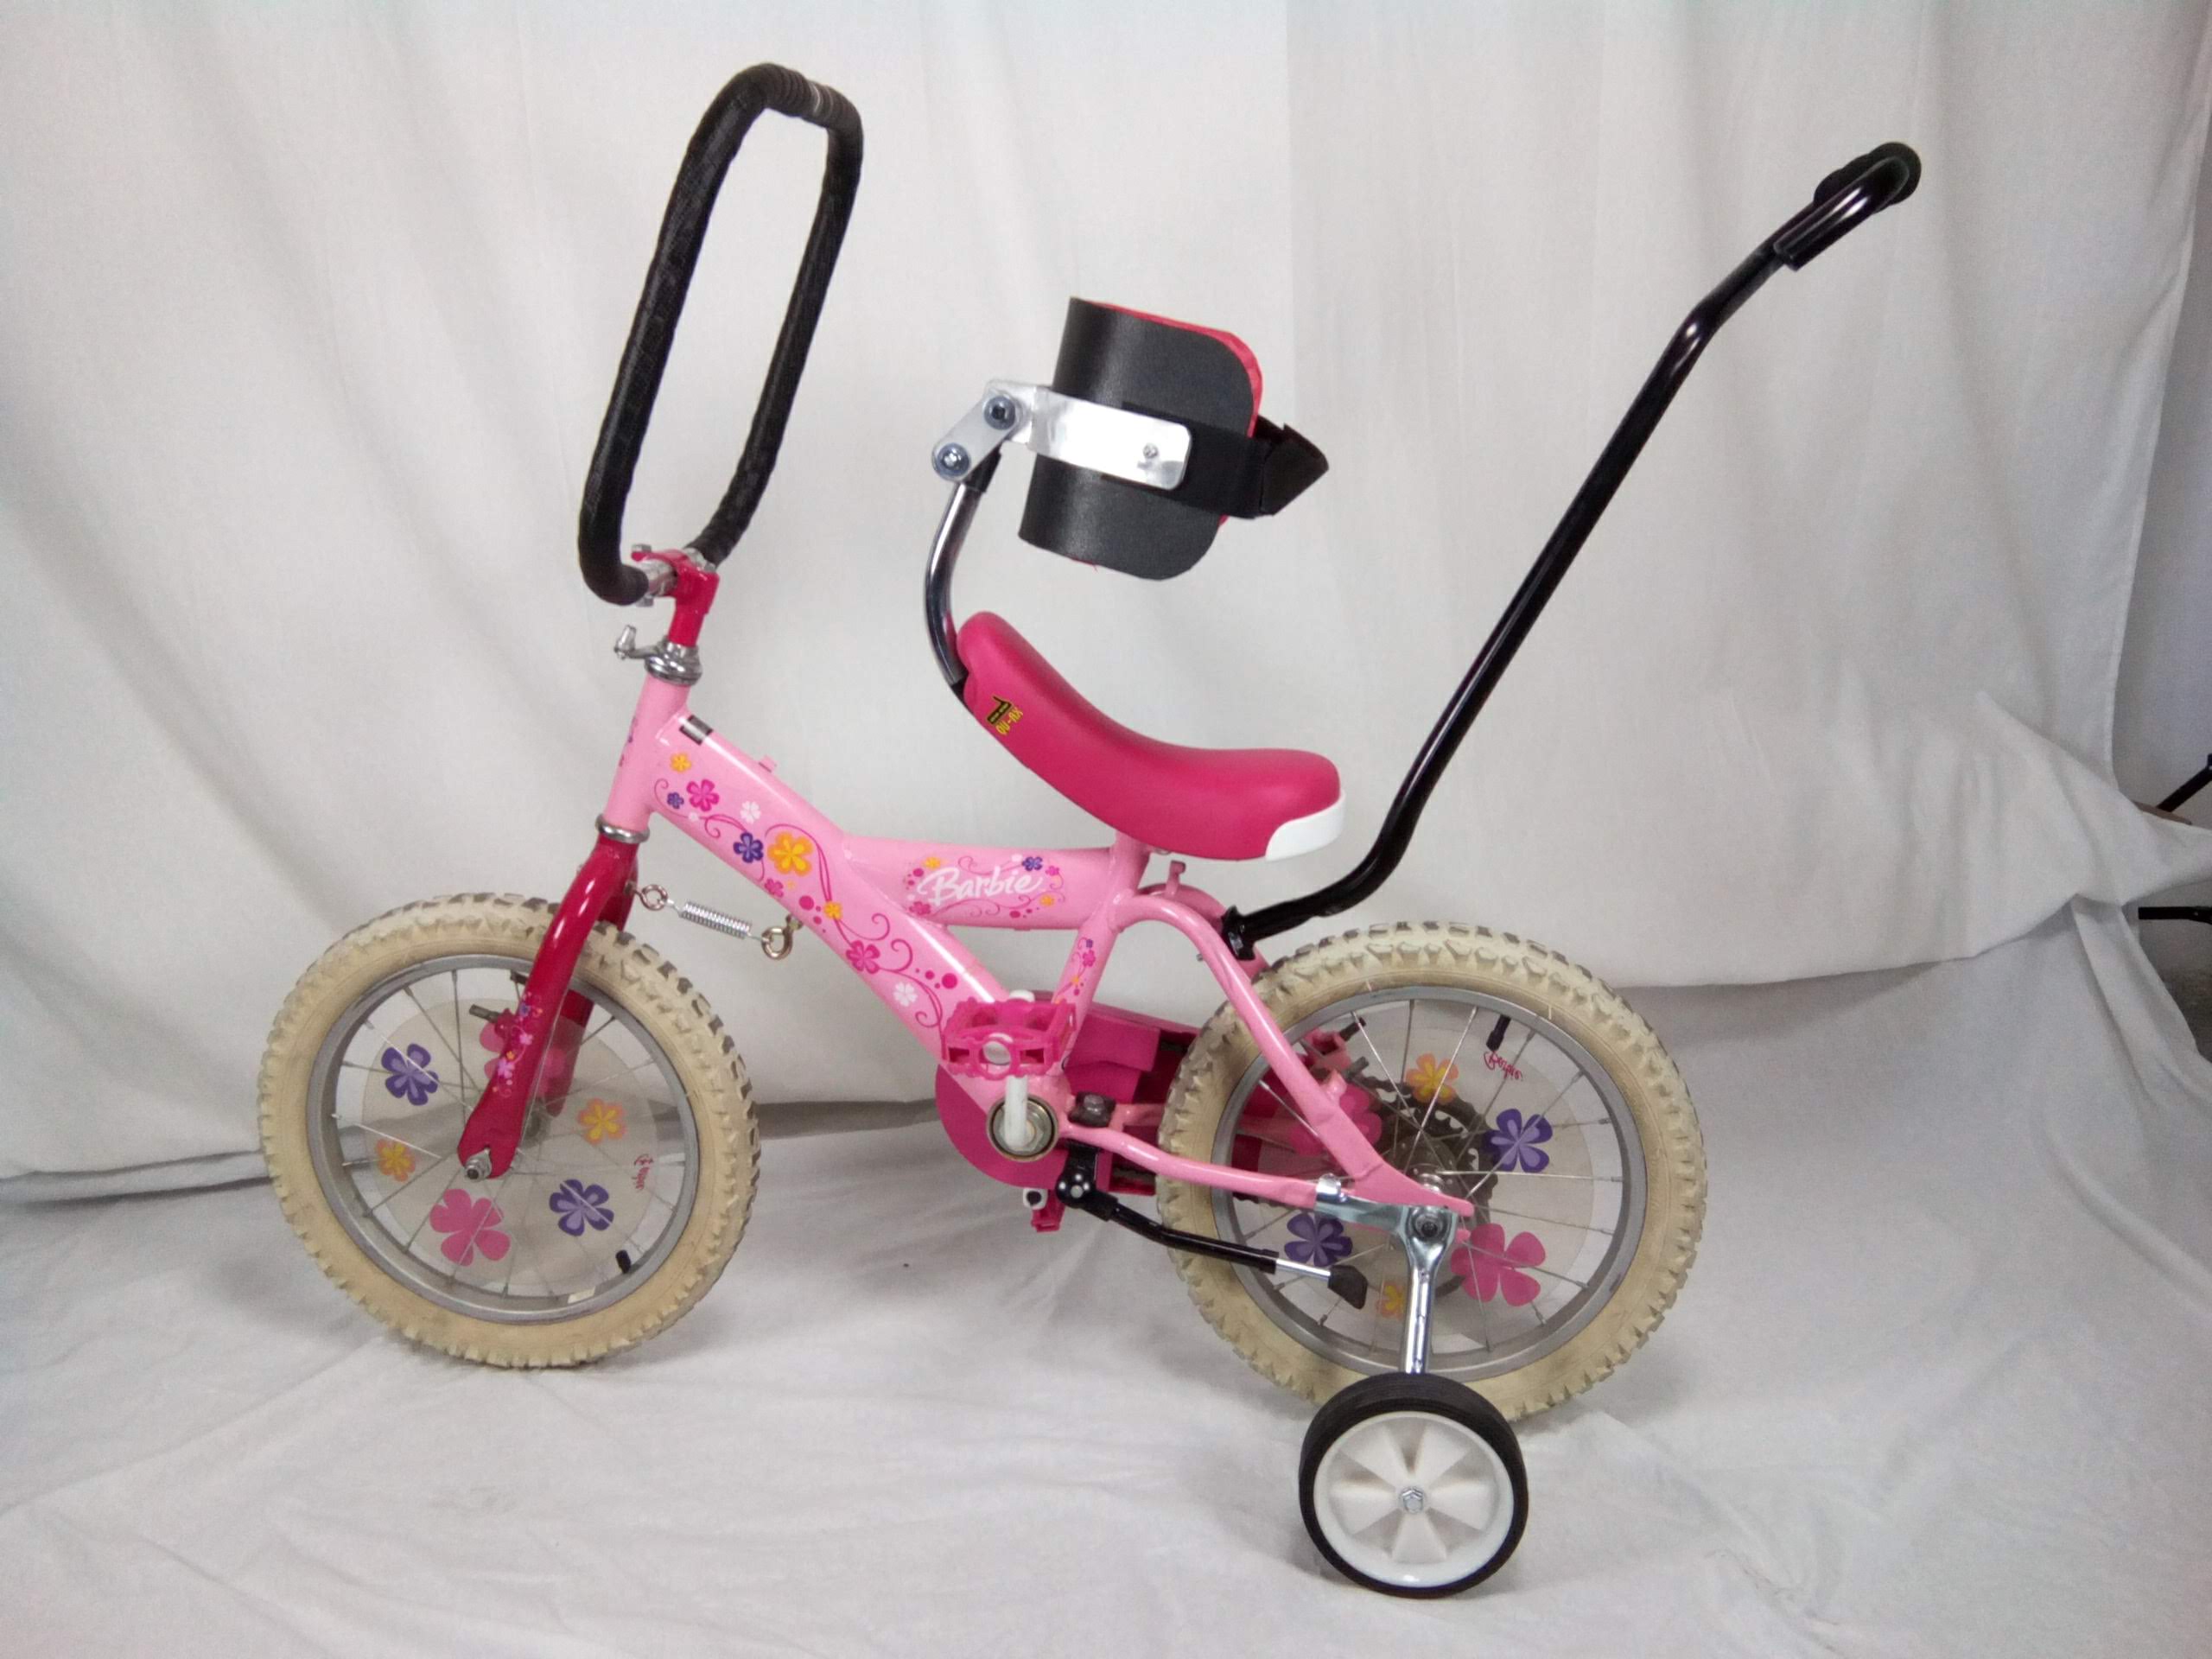 Triciclo niña adaptado a medida